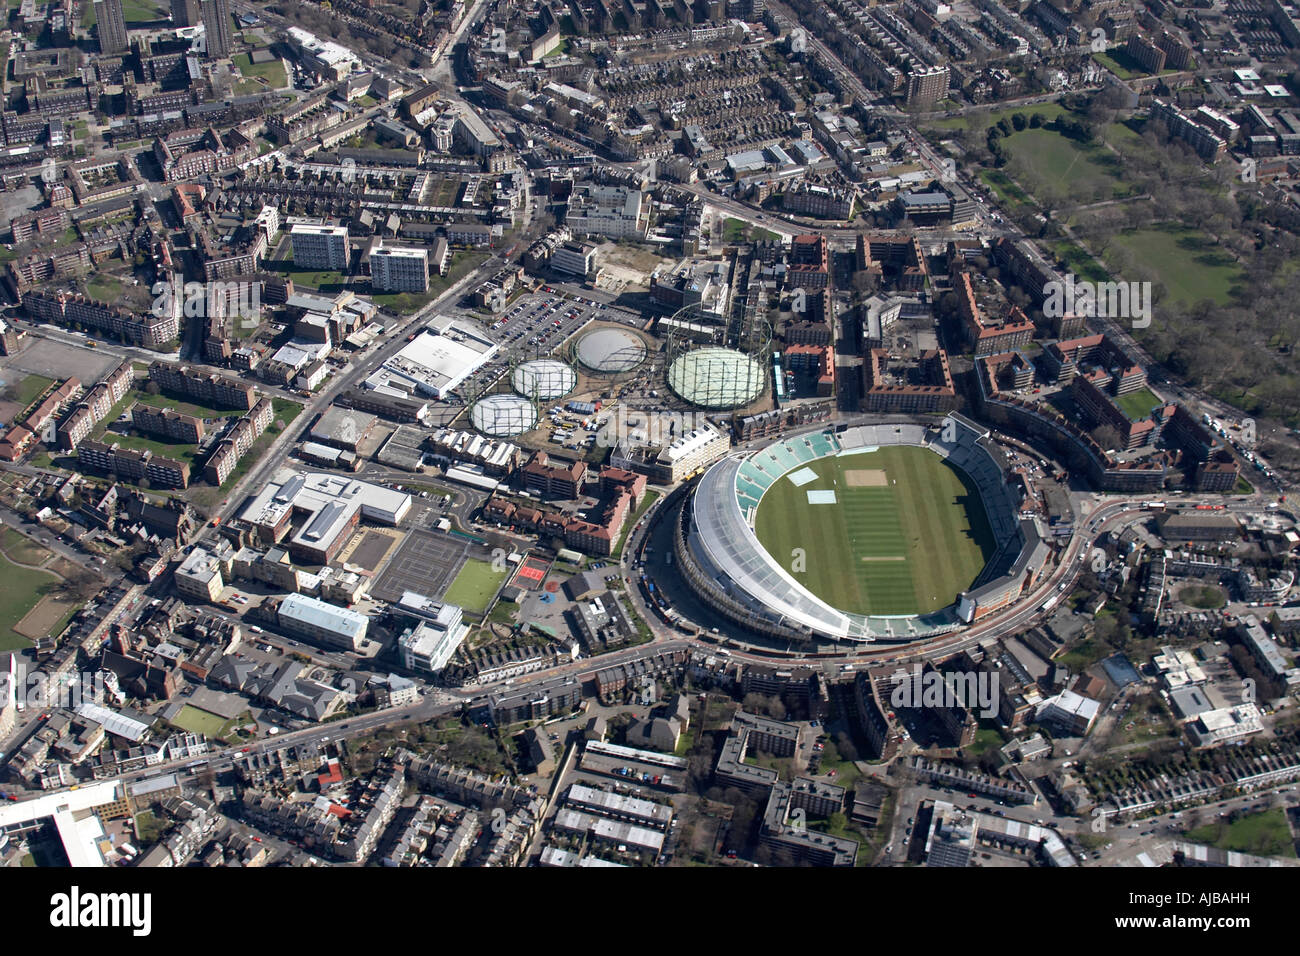 Vue aérienne au nord-est de l'Oval Cricket Ground et banlieue Kennington London SE11 England UK oblique de haut niveau Banque D'Images